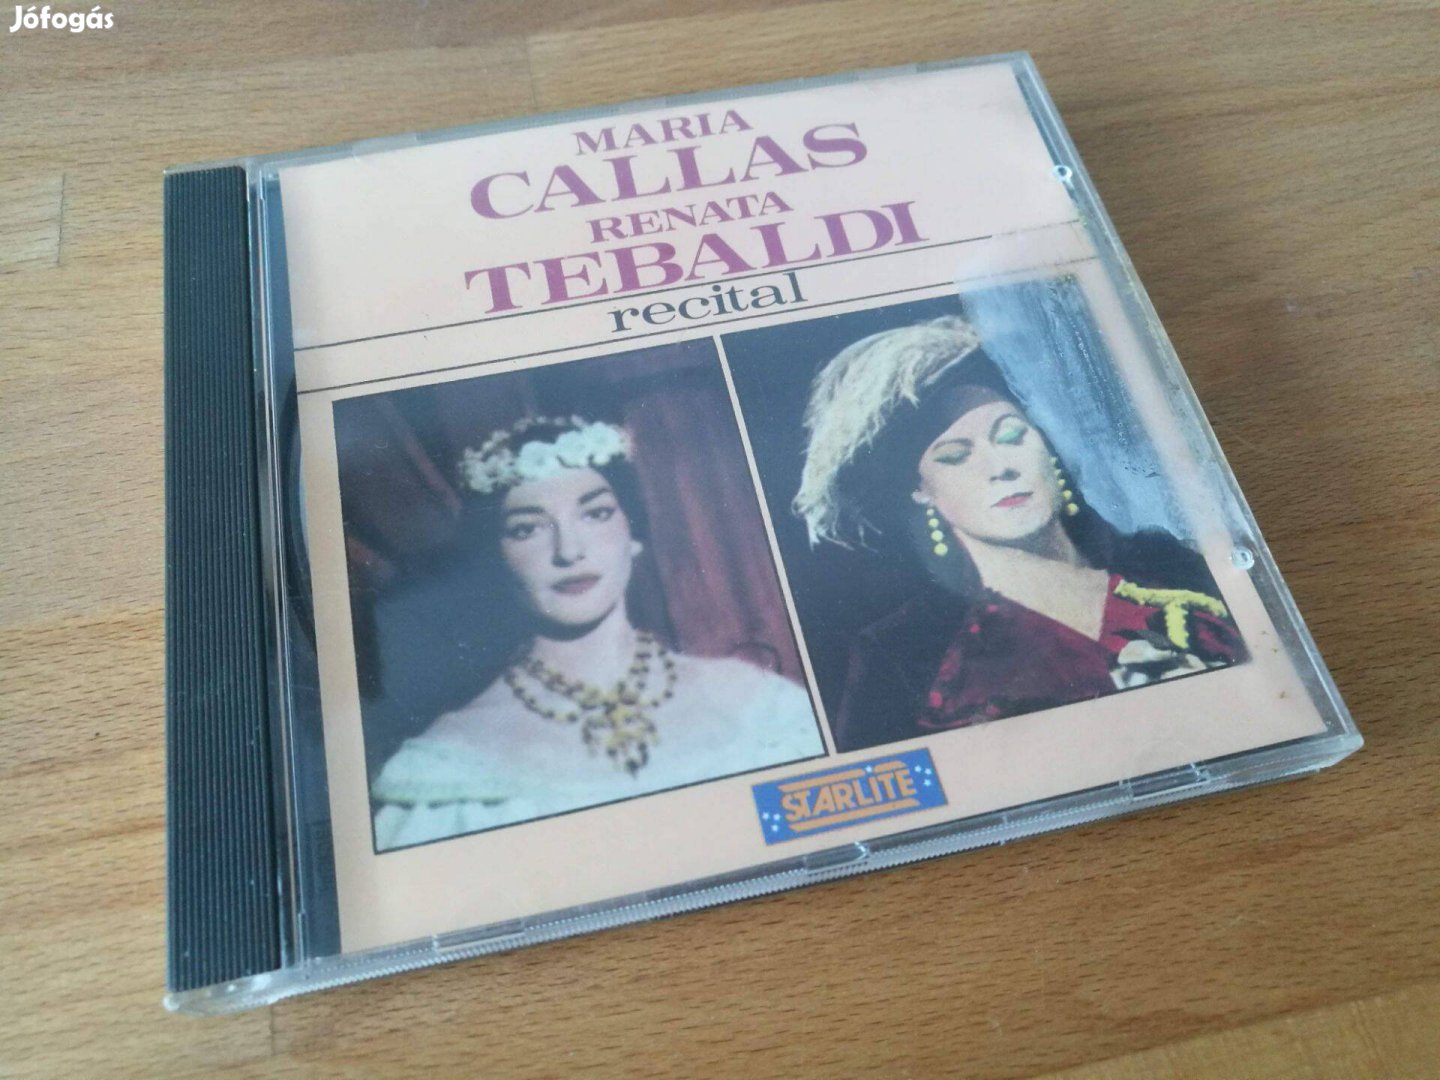 Maria Callas - Renata Tebaldi Recital (Jtv Enterprises, CH, 1988, CD)